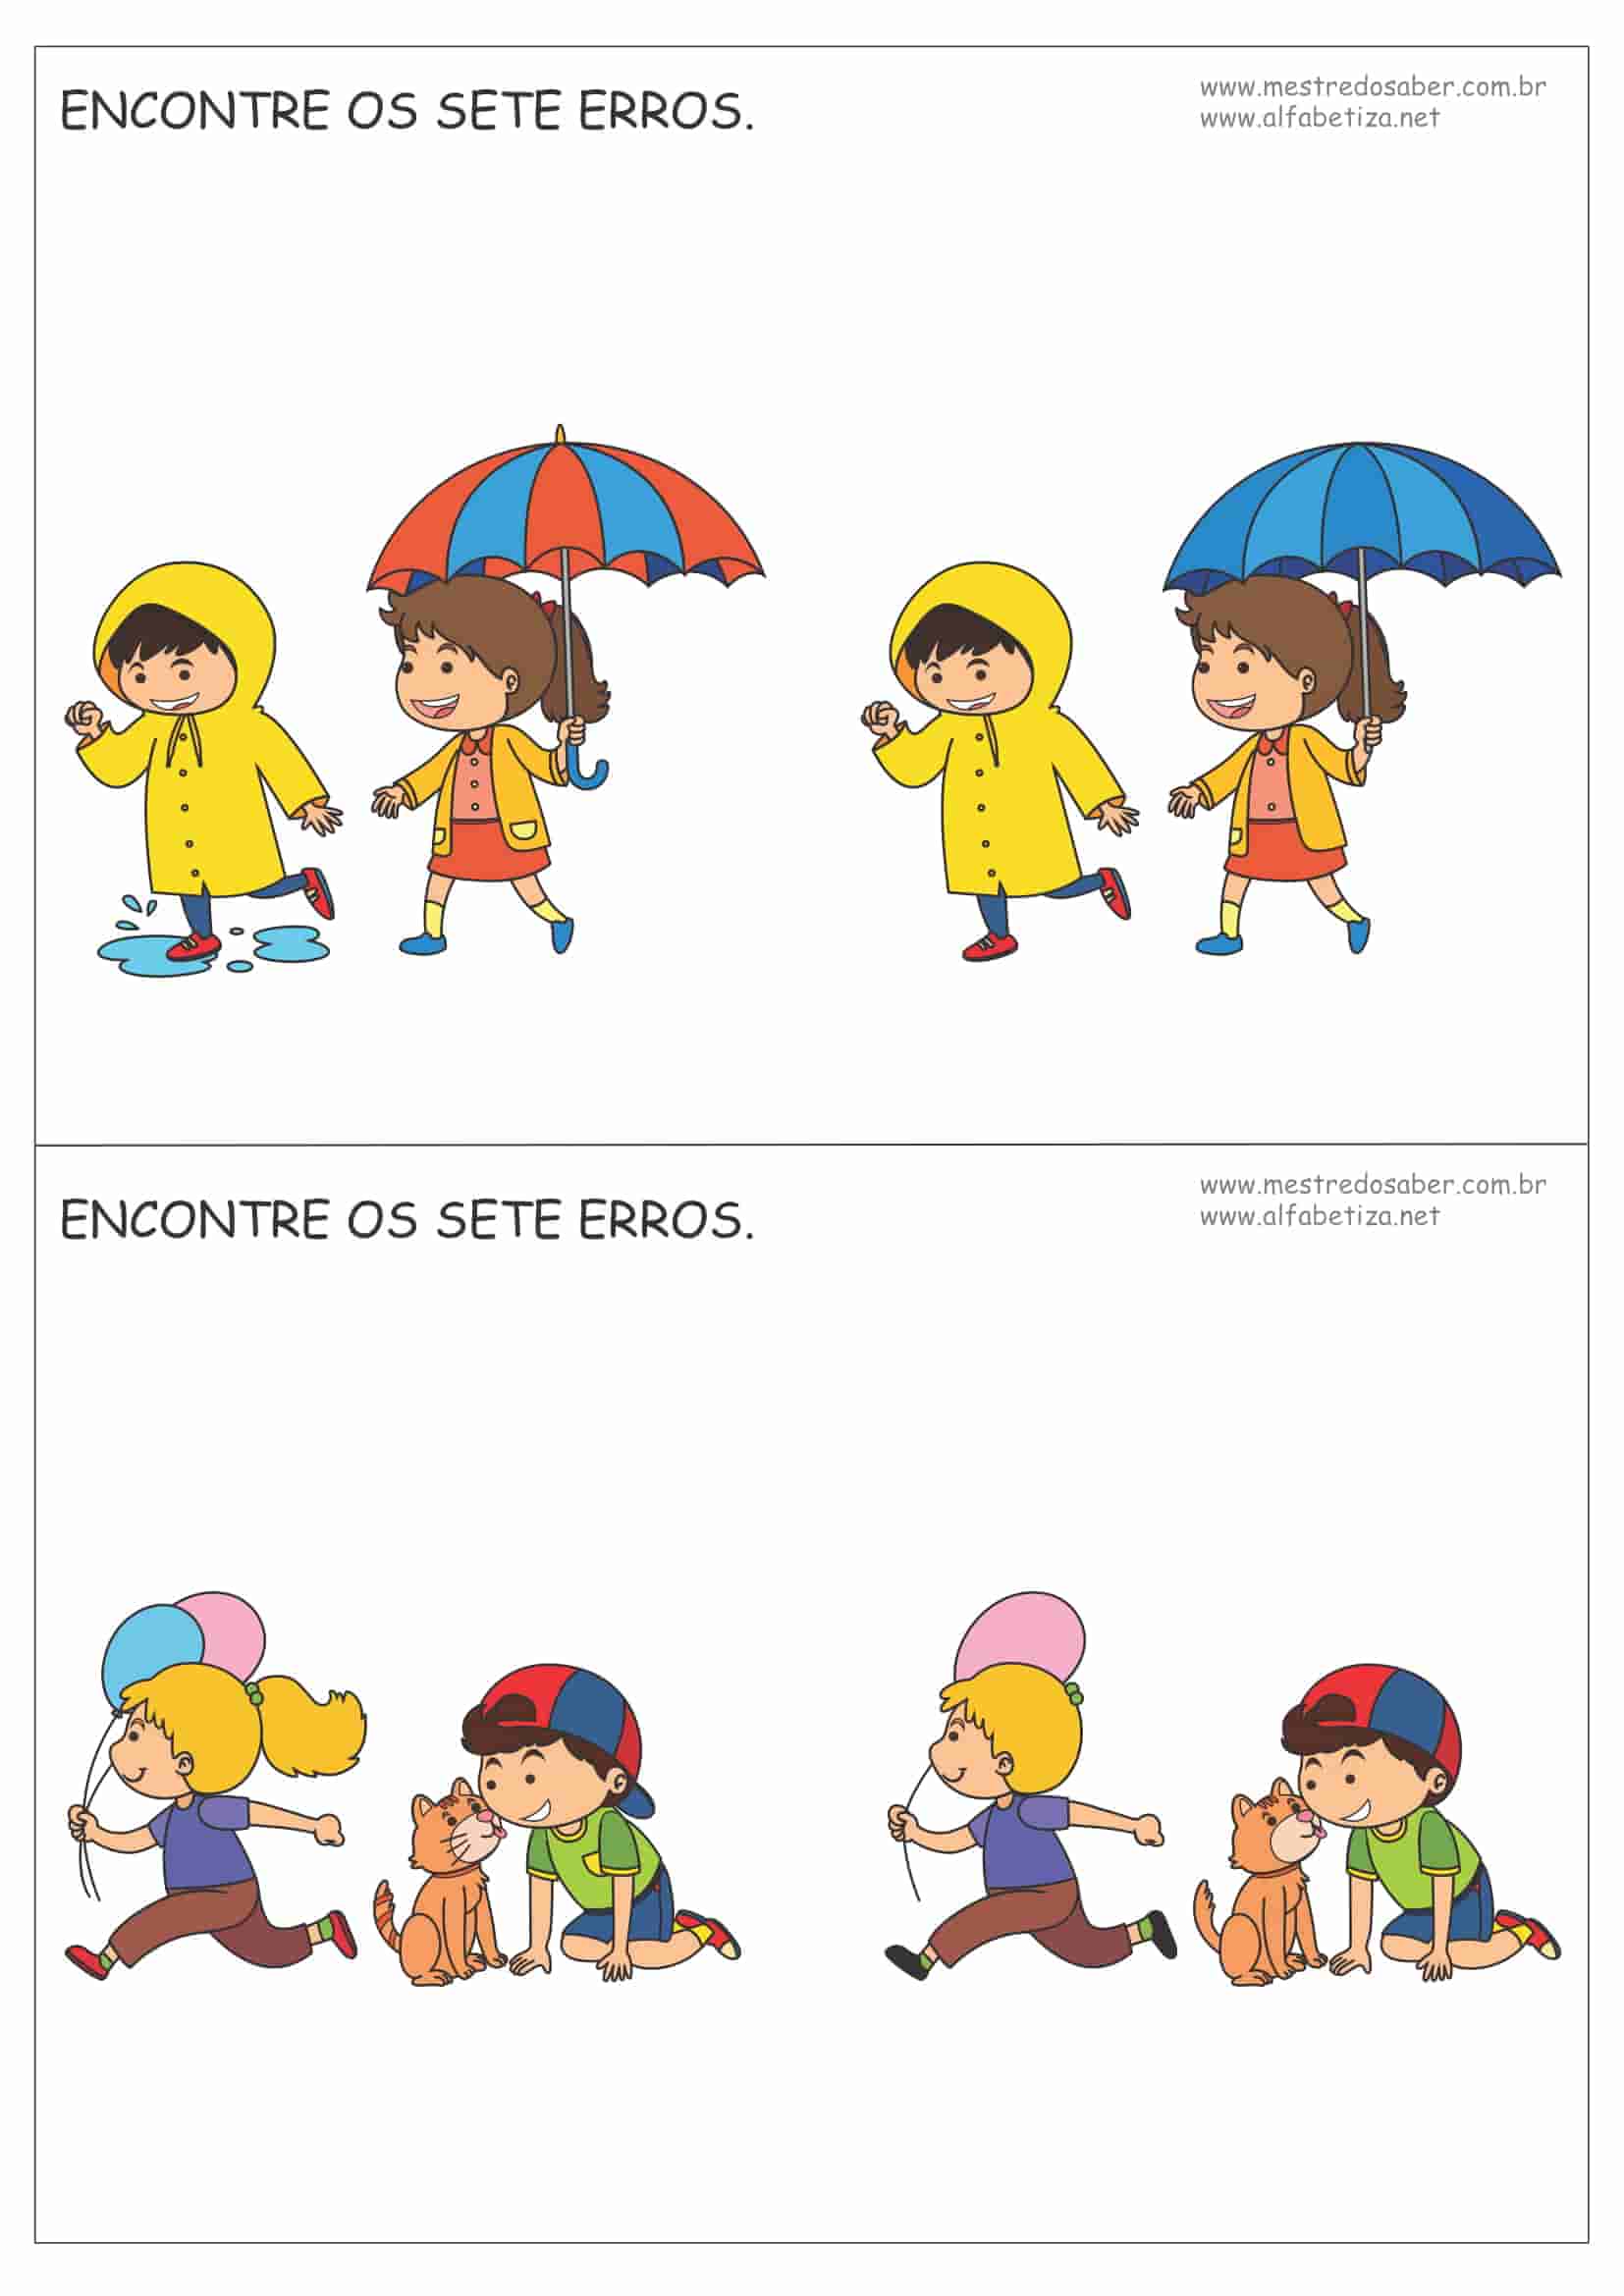 Jogos dos 7 Erros para imprimir e colorir  Ed infantil, Brincadeiras  escolares, Livros sobre educação infantil